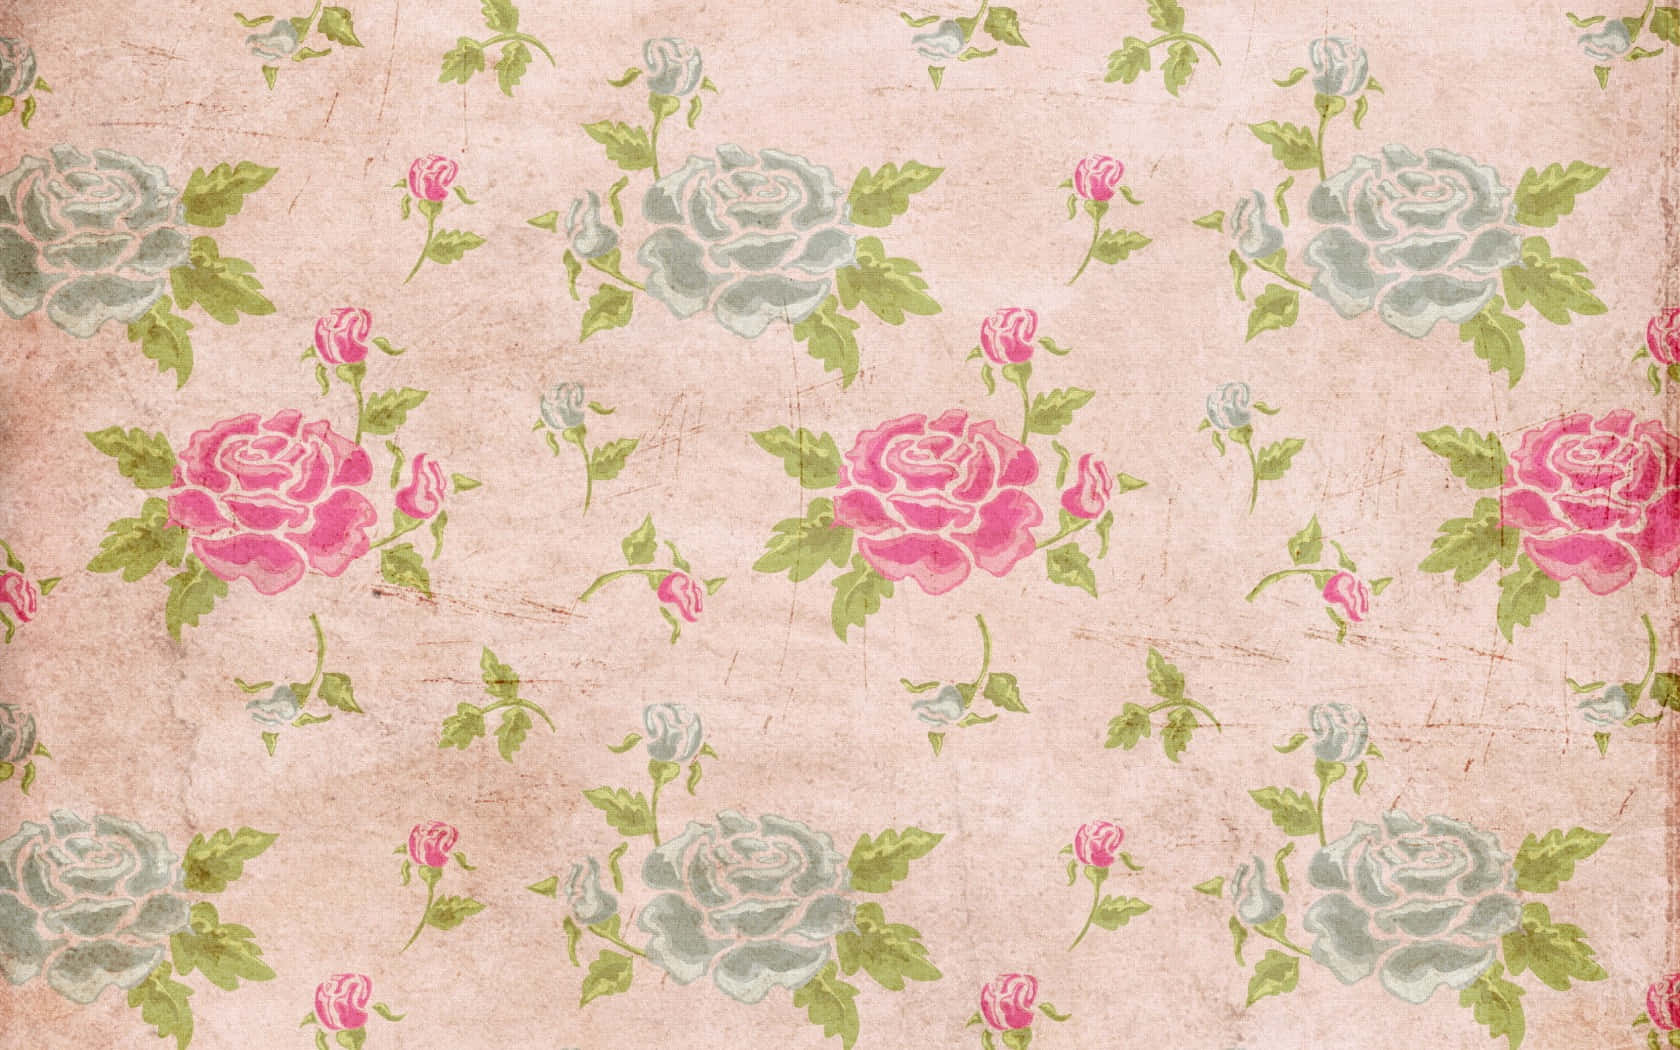 Enjoy the beauty of a handmade quilt Wallpaper